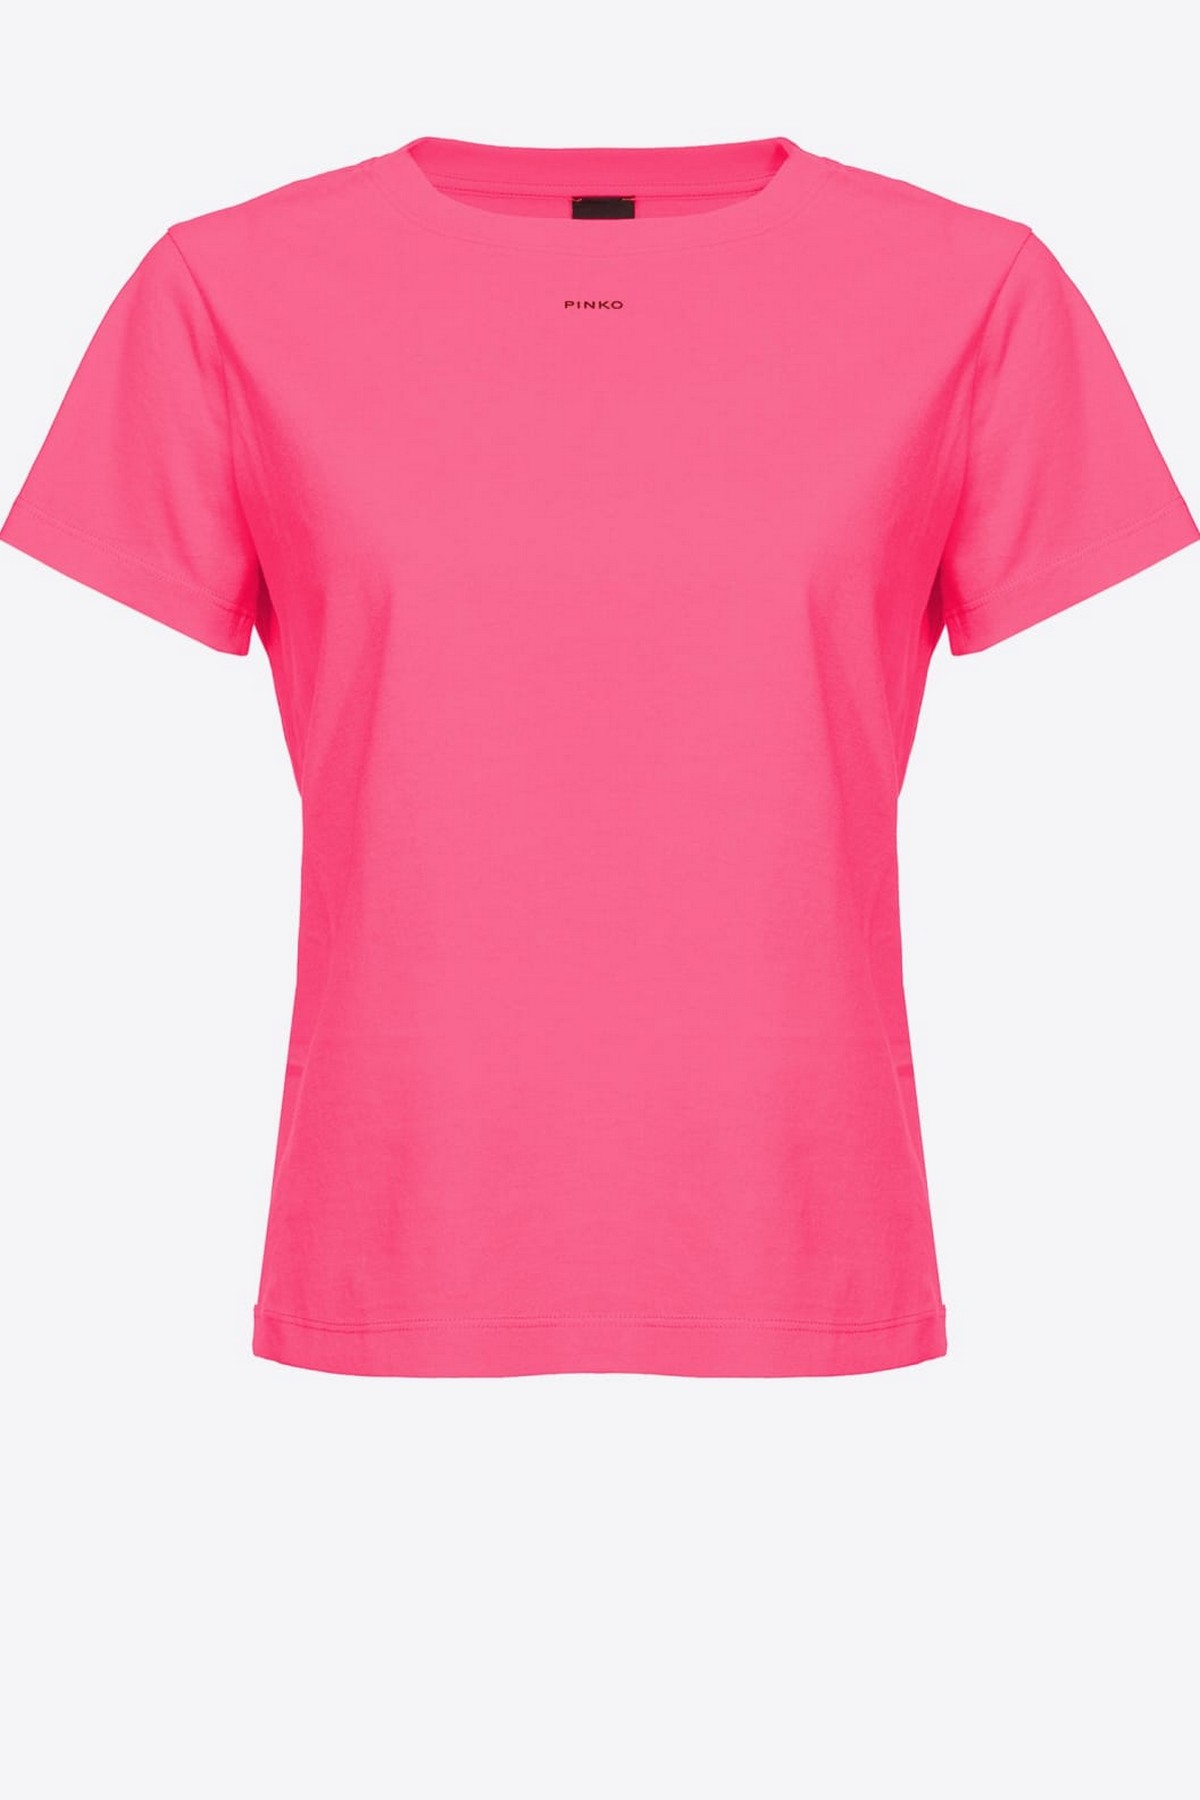 T-shirt Pinko logo in de kleur fuchsia van het merk Pinko